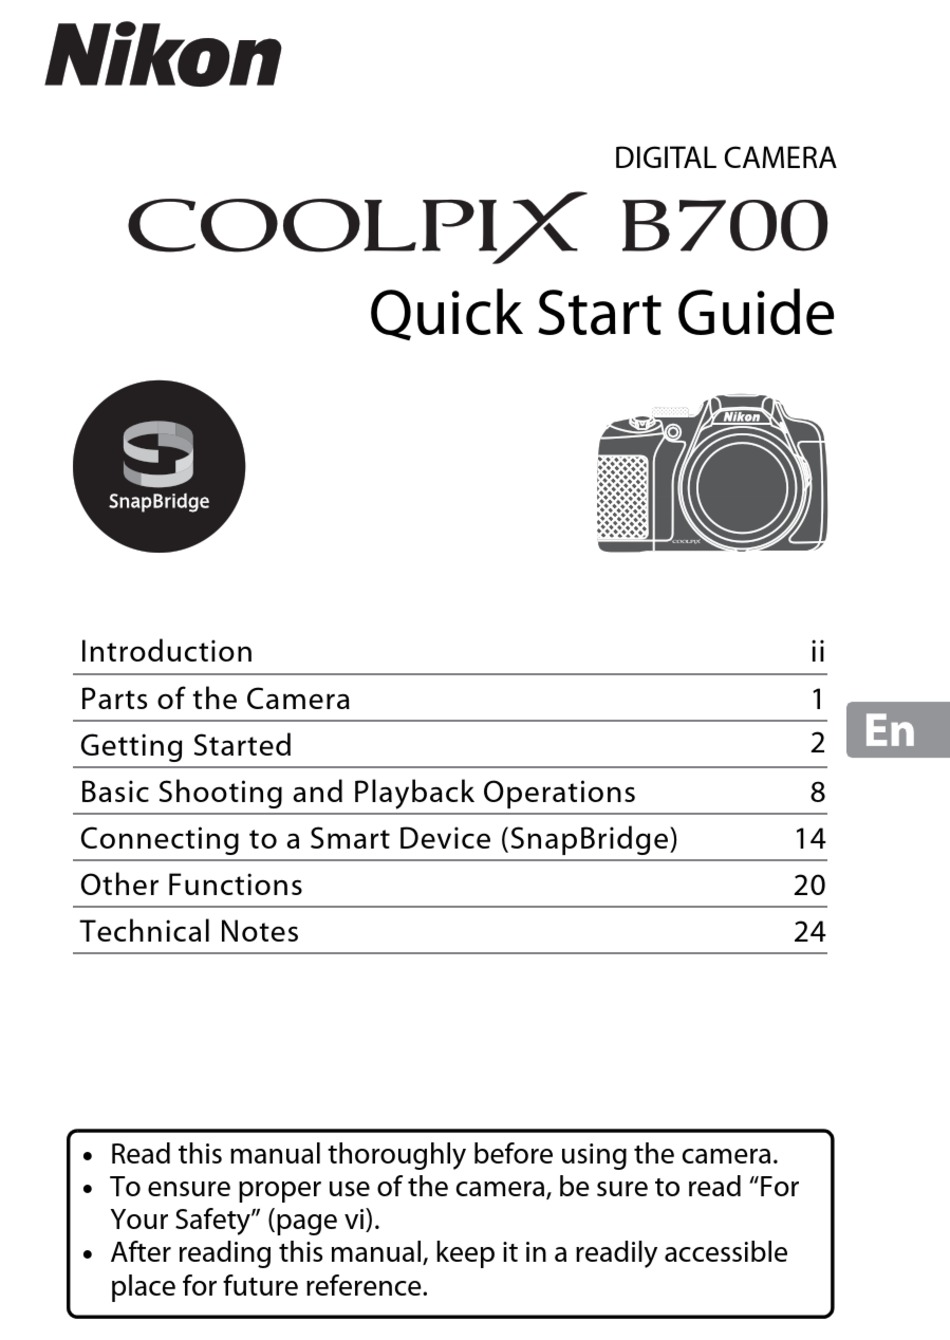 NIKON COOLPIX B700 QUICK START MANUAL Pdf Download | ManualsLib